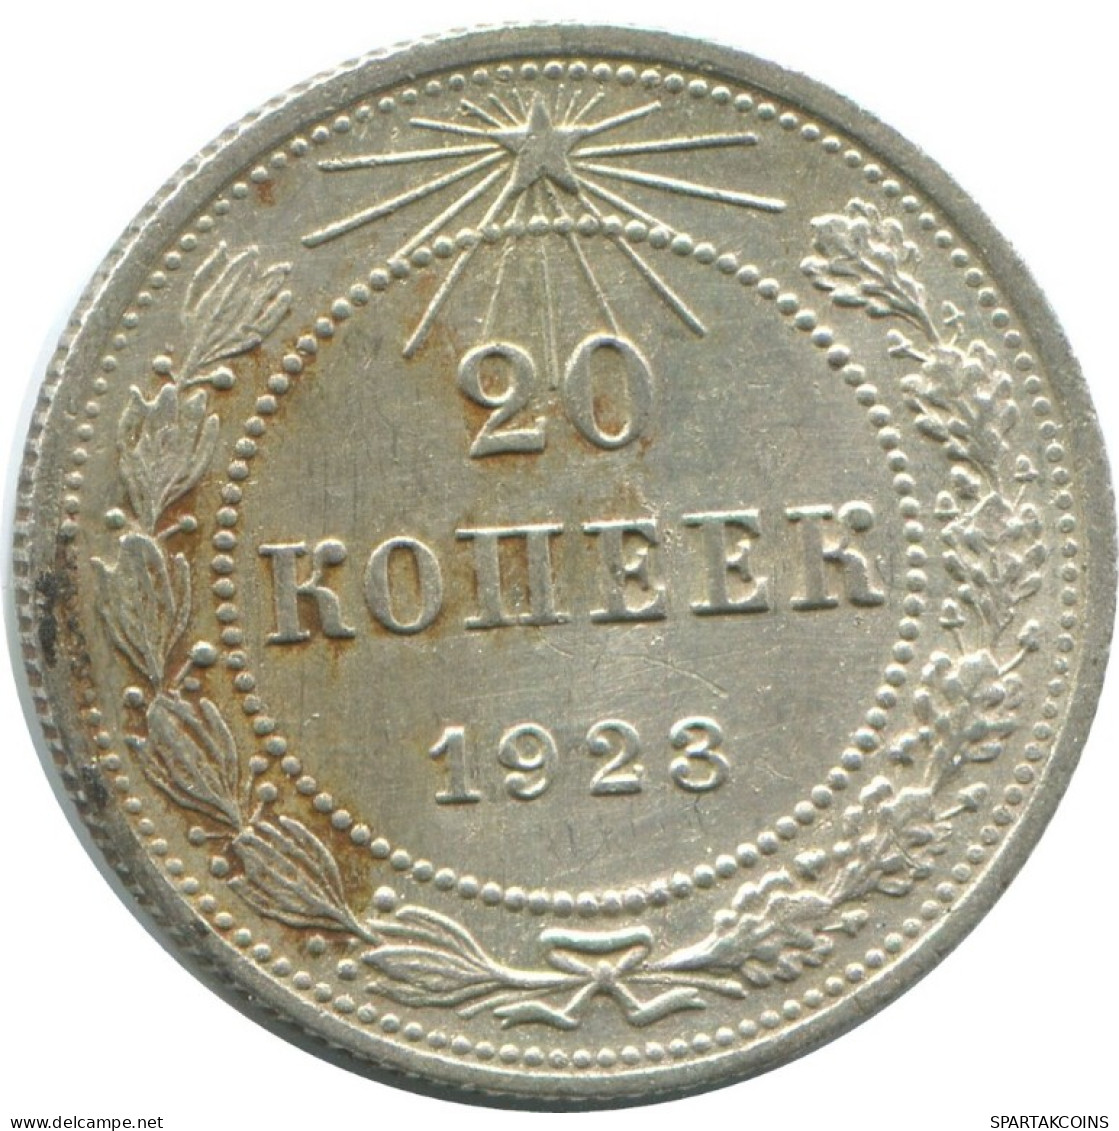 20 KOPEKS 1923 RUSSIA RSFSR SILVER Coin HIGH GRADE #AF694.U.A - Russland